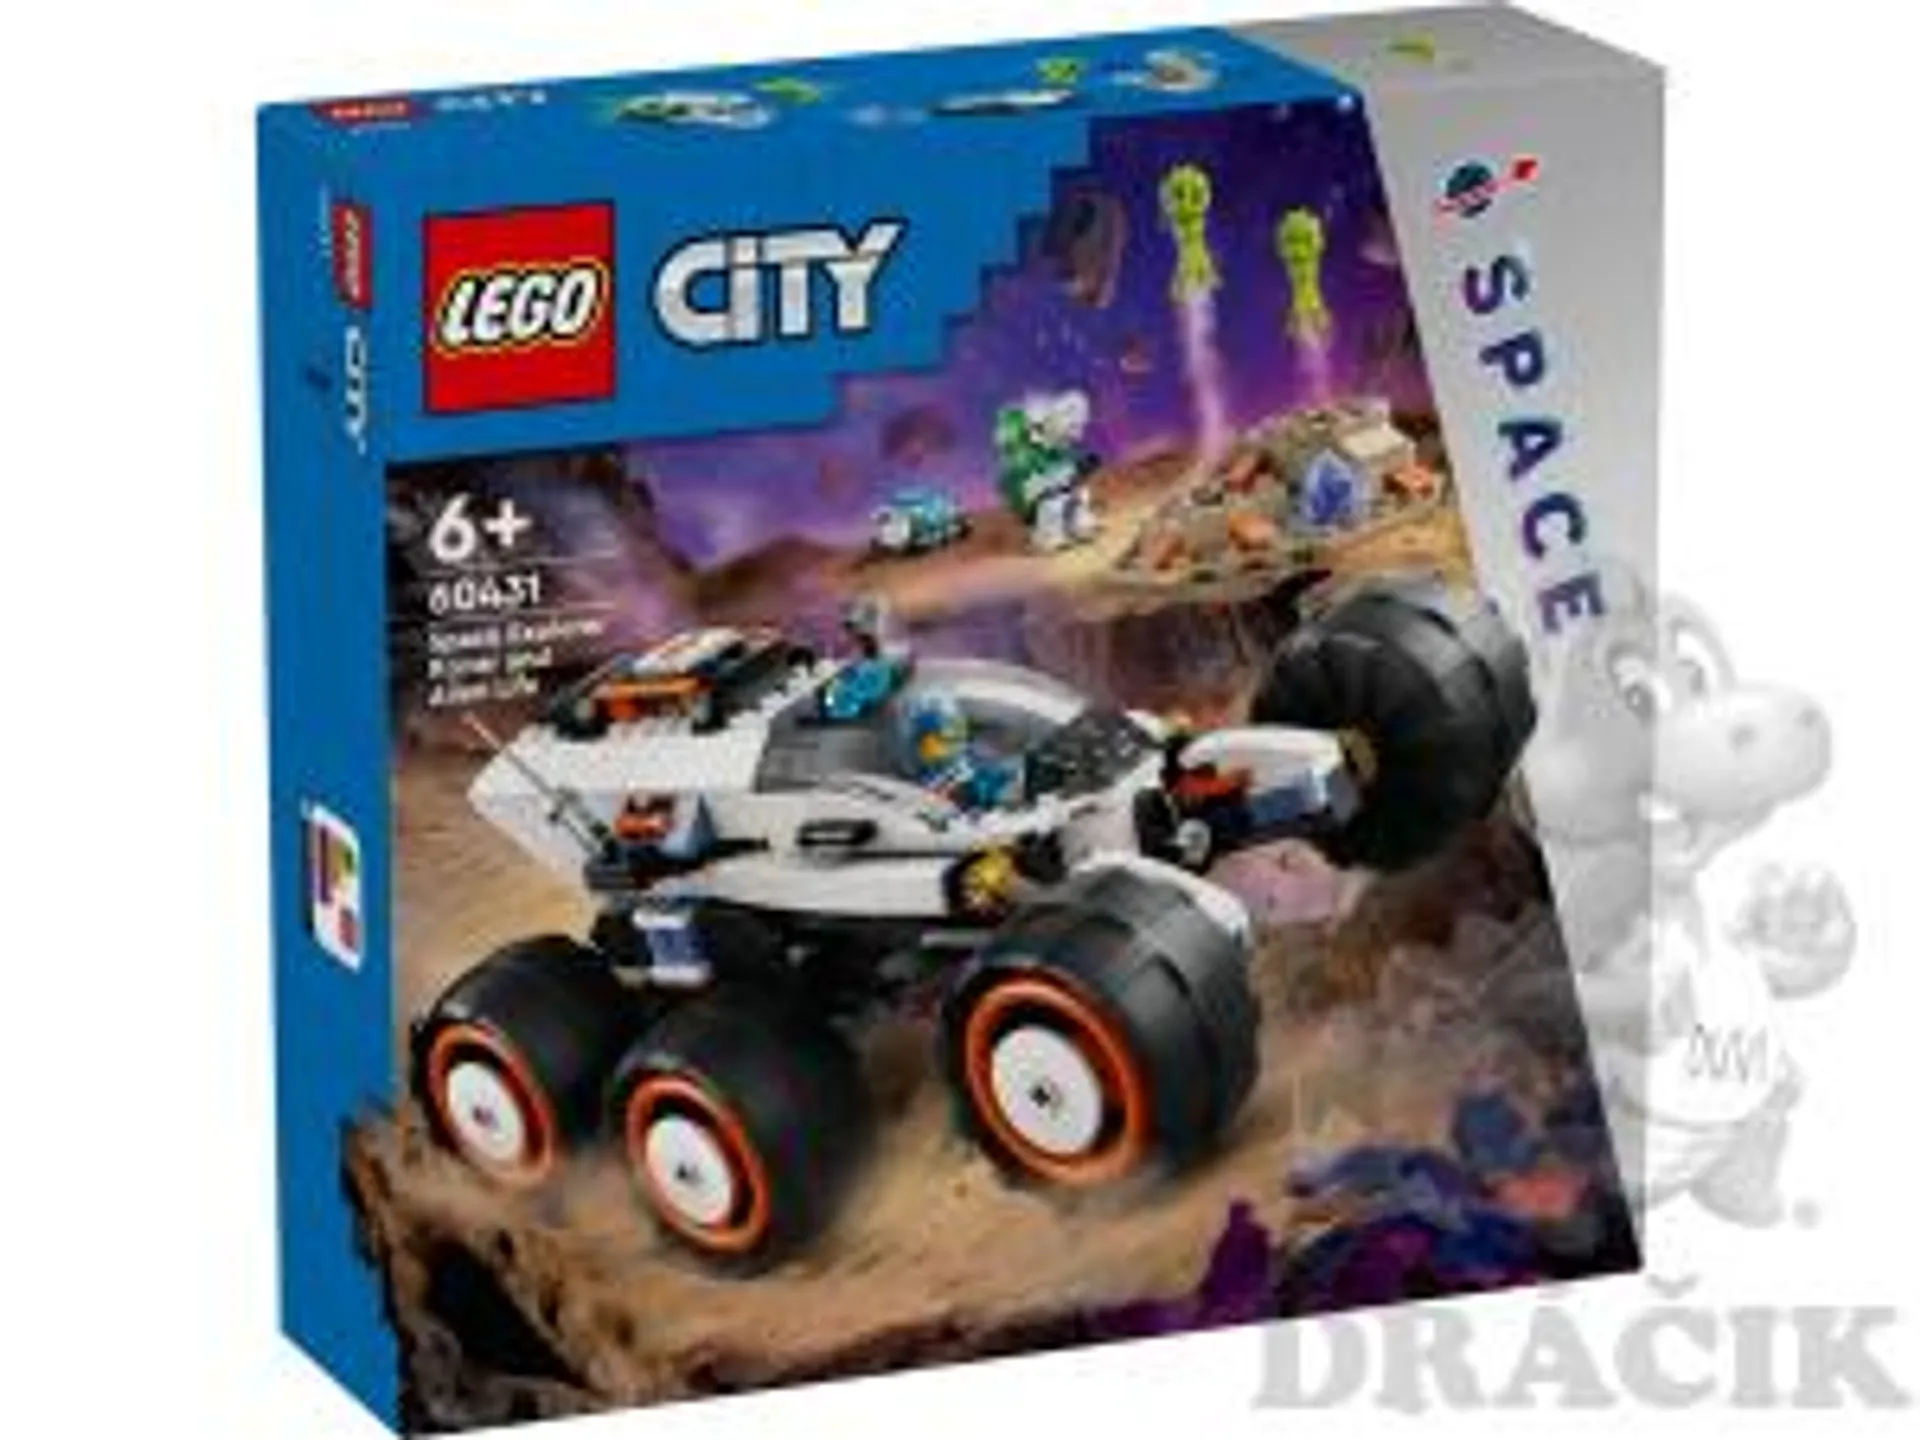 60431 Lego City - Prieskumné vesmírne vozidlo a mimozemský život